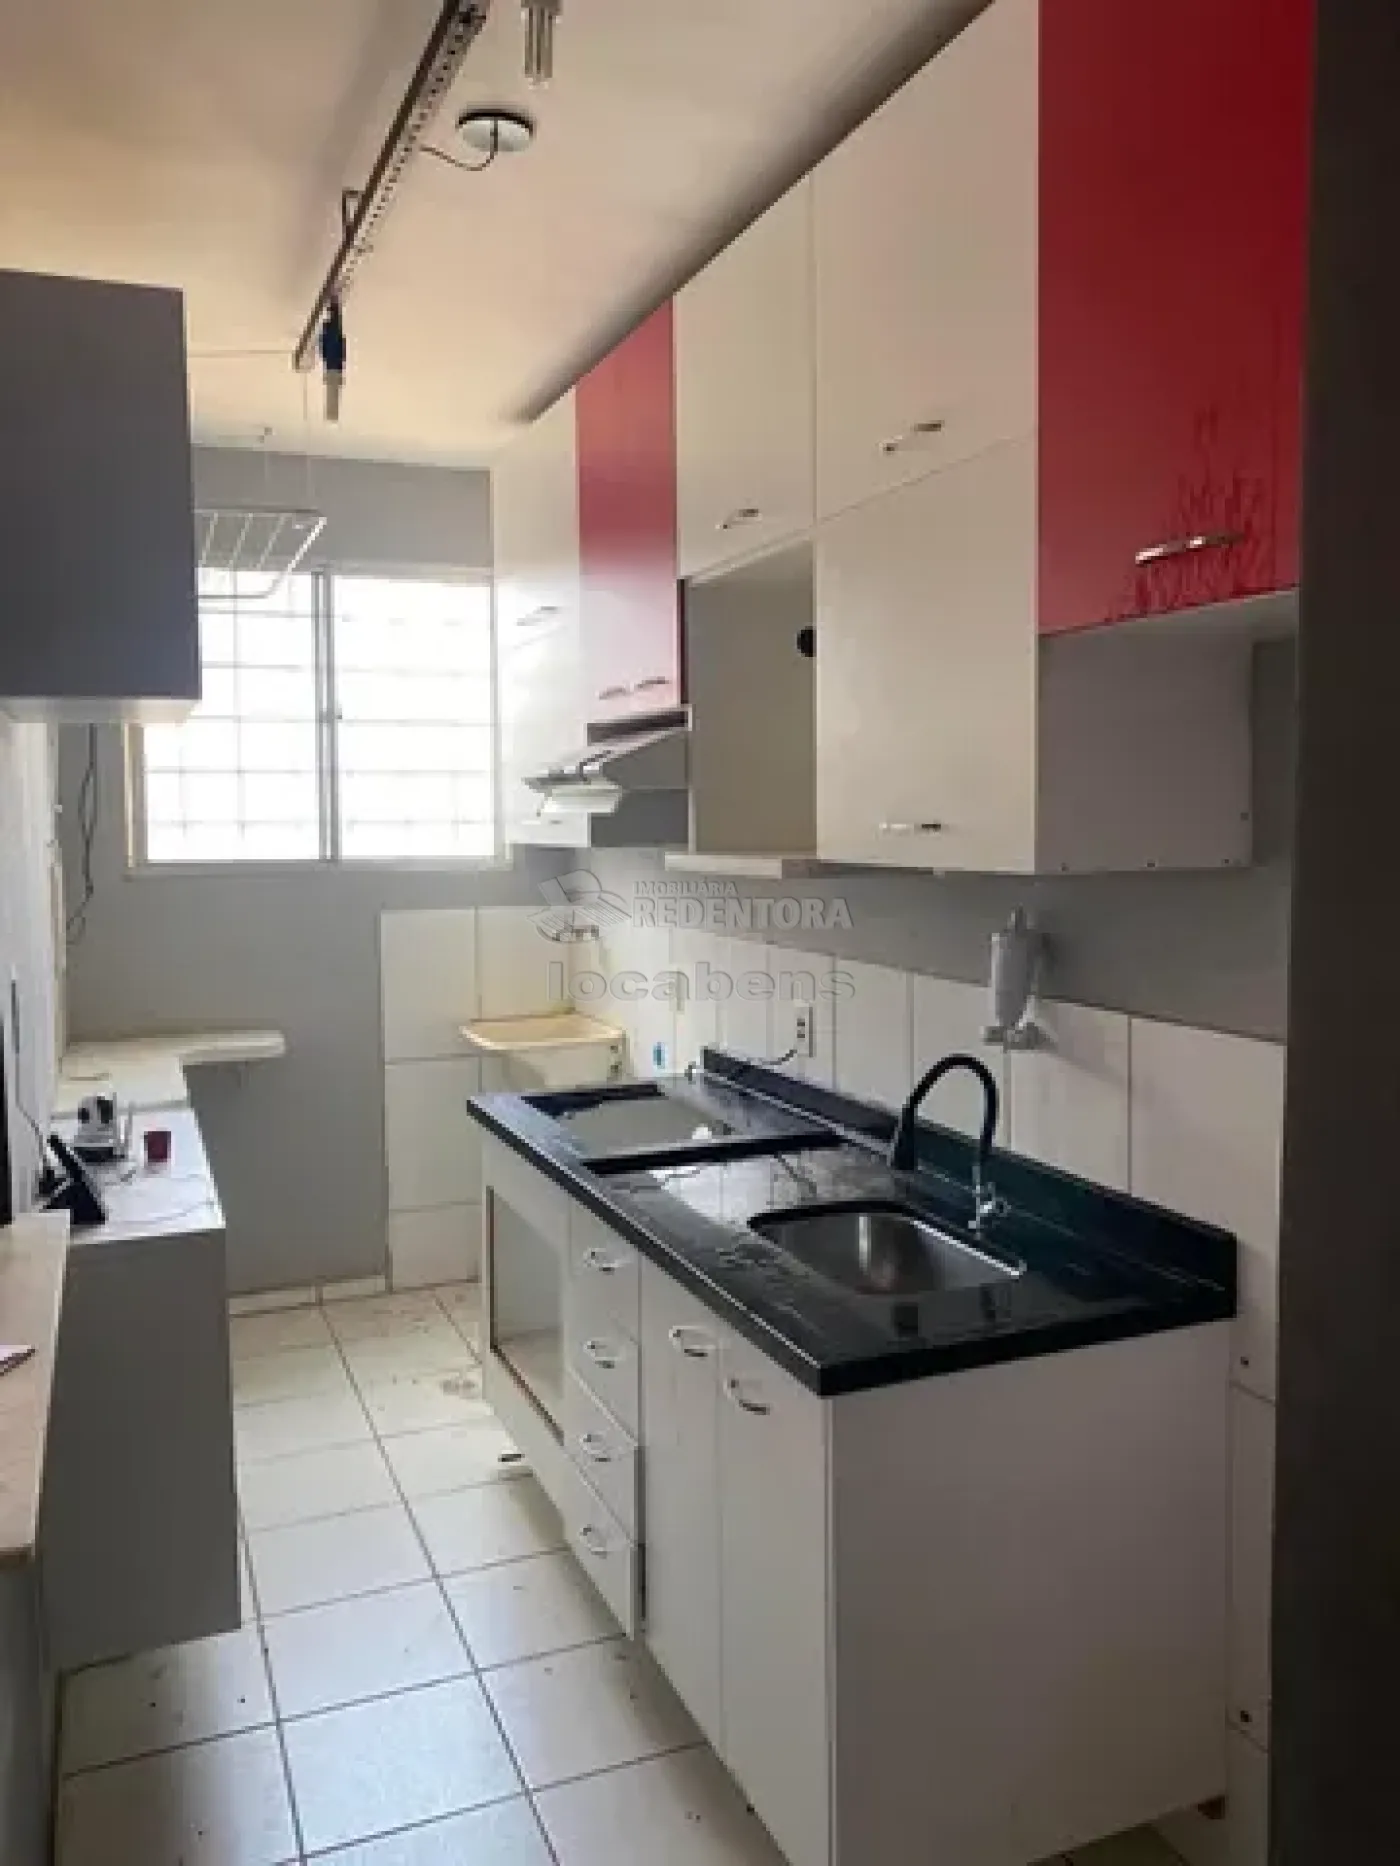 Alugar Apartamento / Padrão em São José do Rio Preto apenas R$ 850,00 - Foto 11